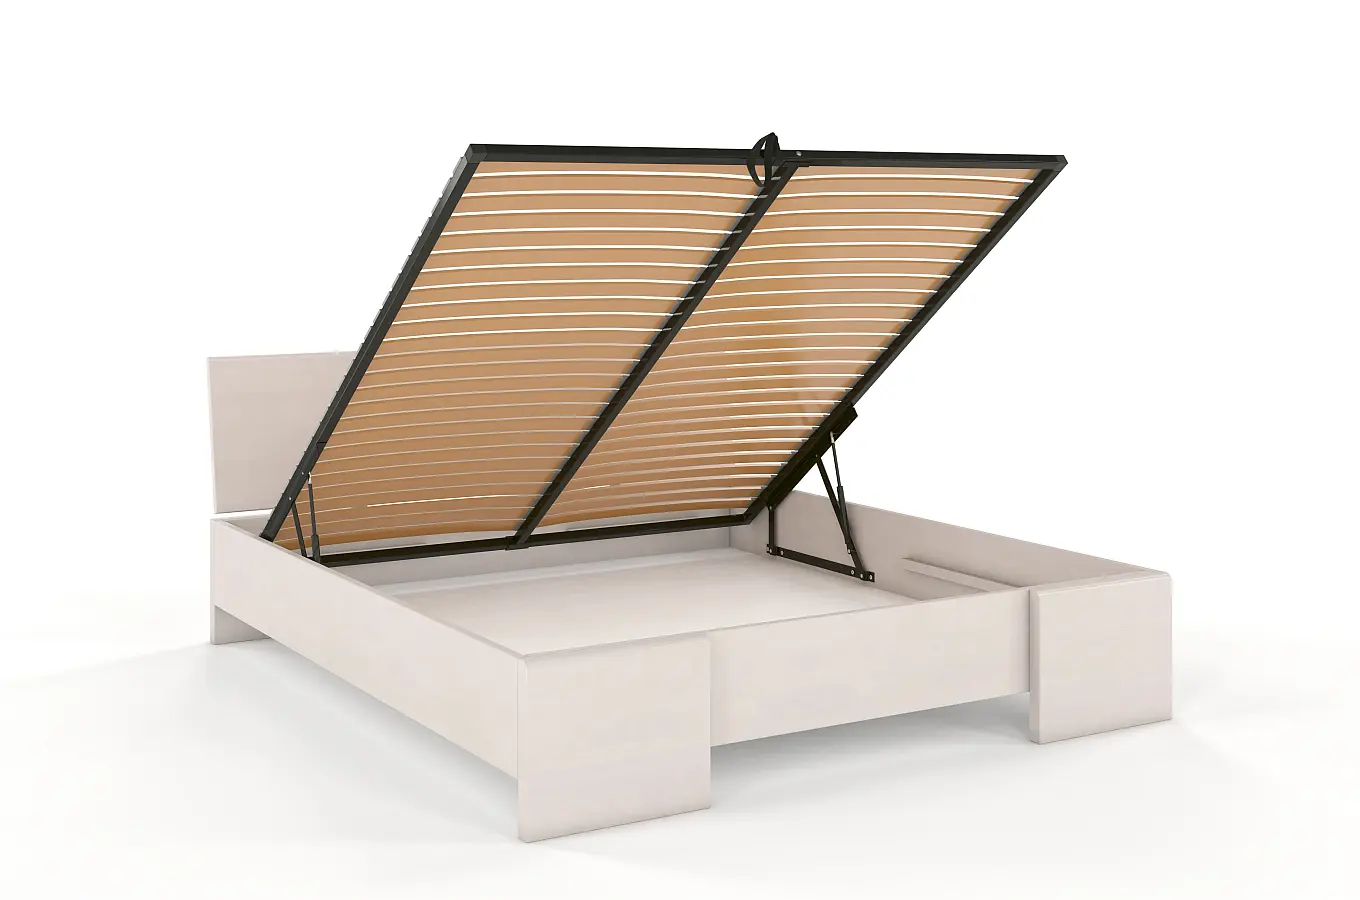 Łóżko drewniane bukowe Visby Hessler High BC (skrzynia na pościel) / 160x200 cm, kolor biały